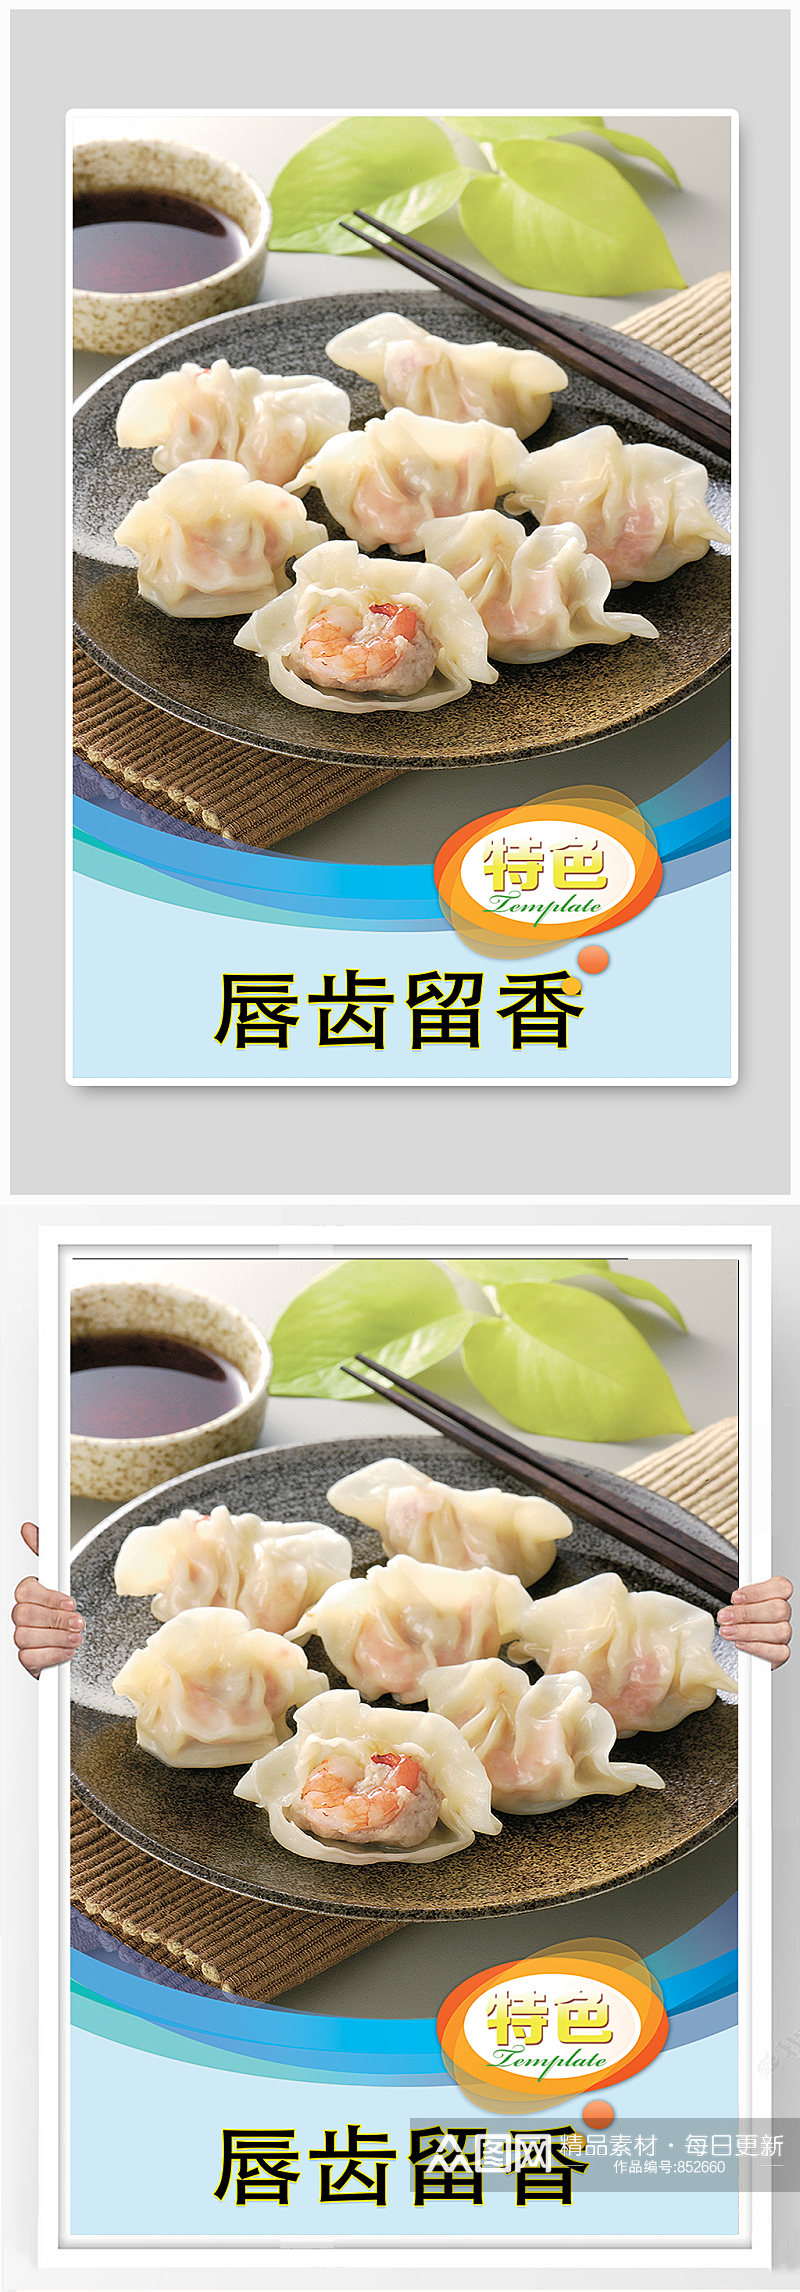 美味水饺美食海报素材